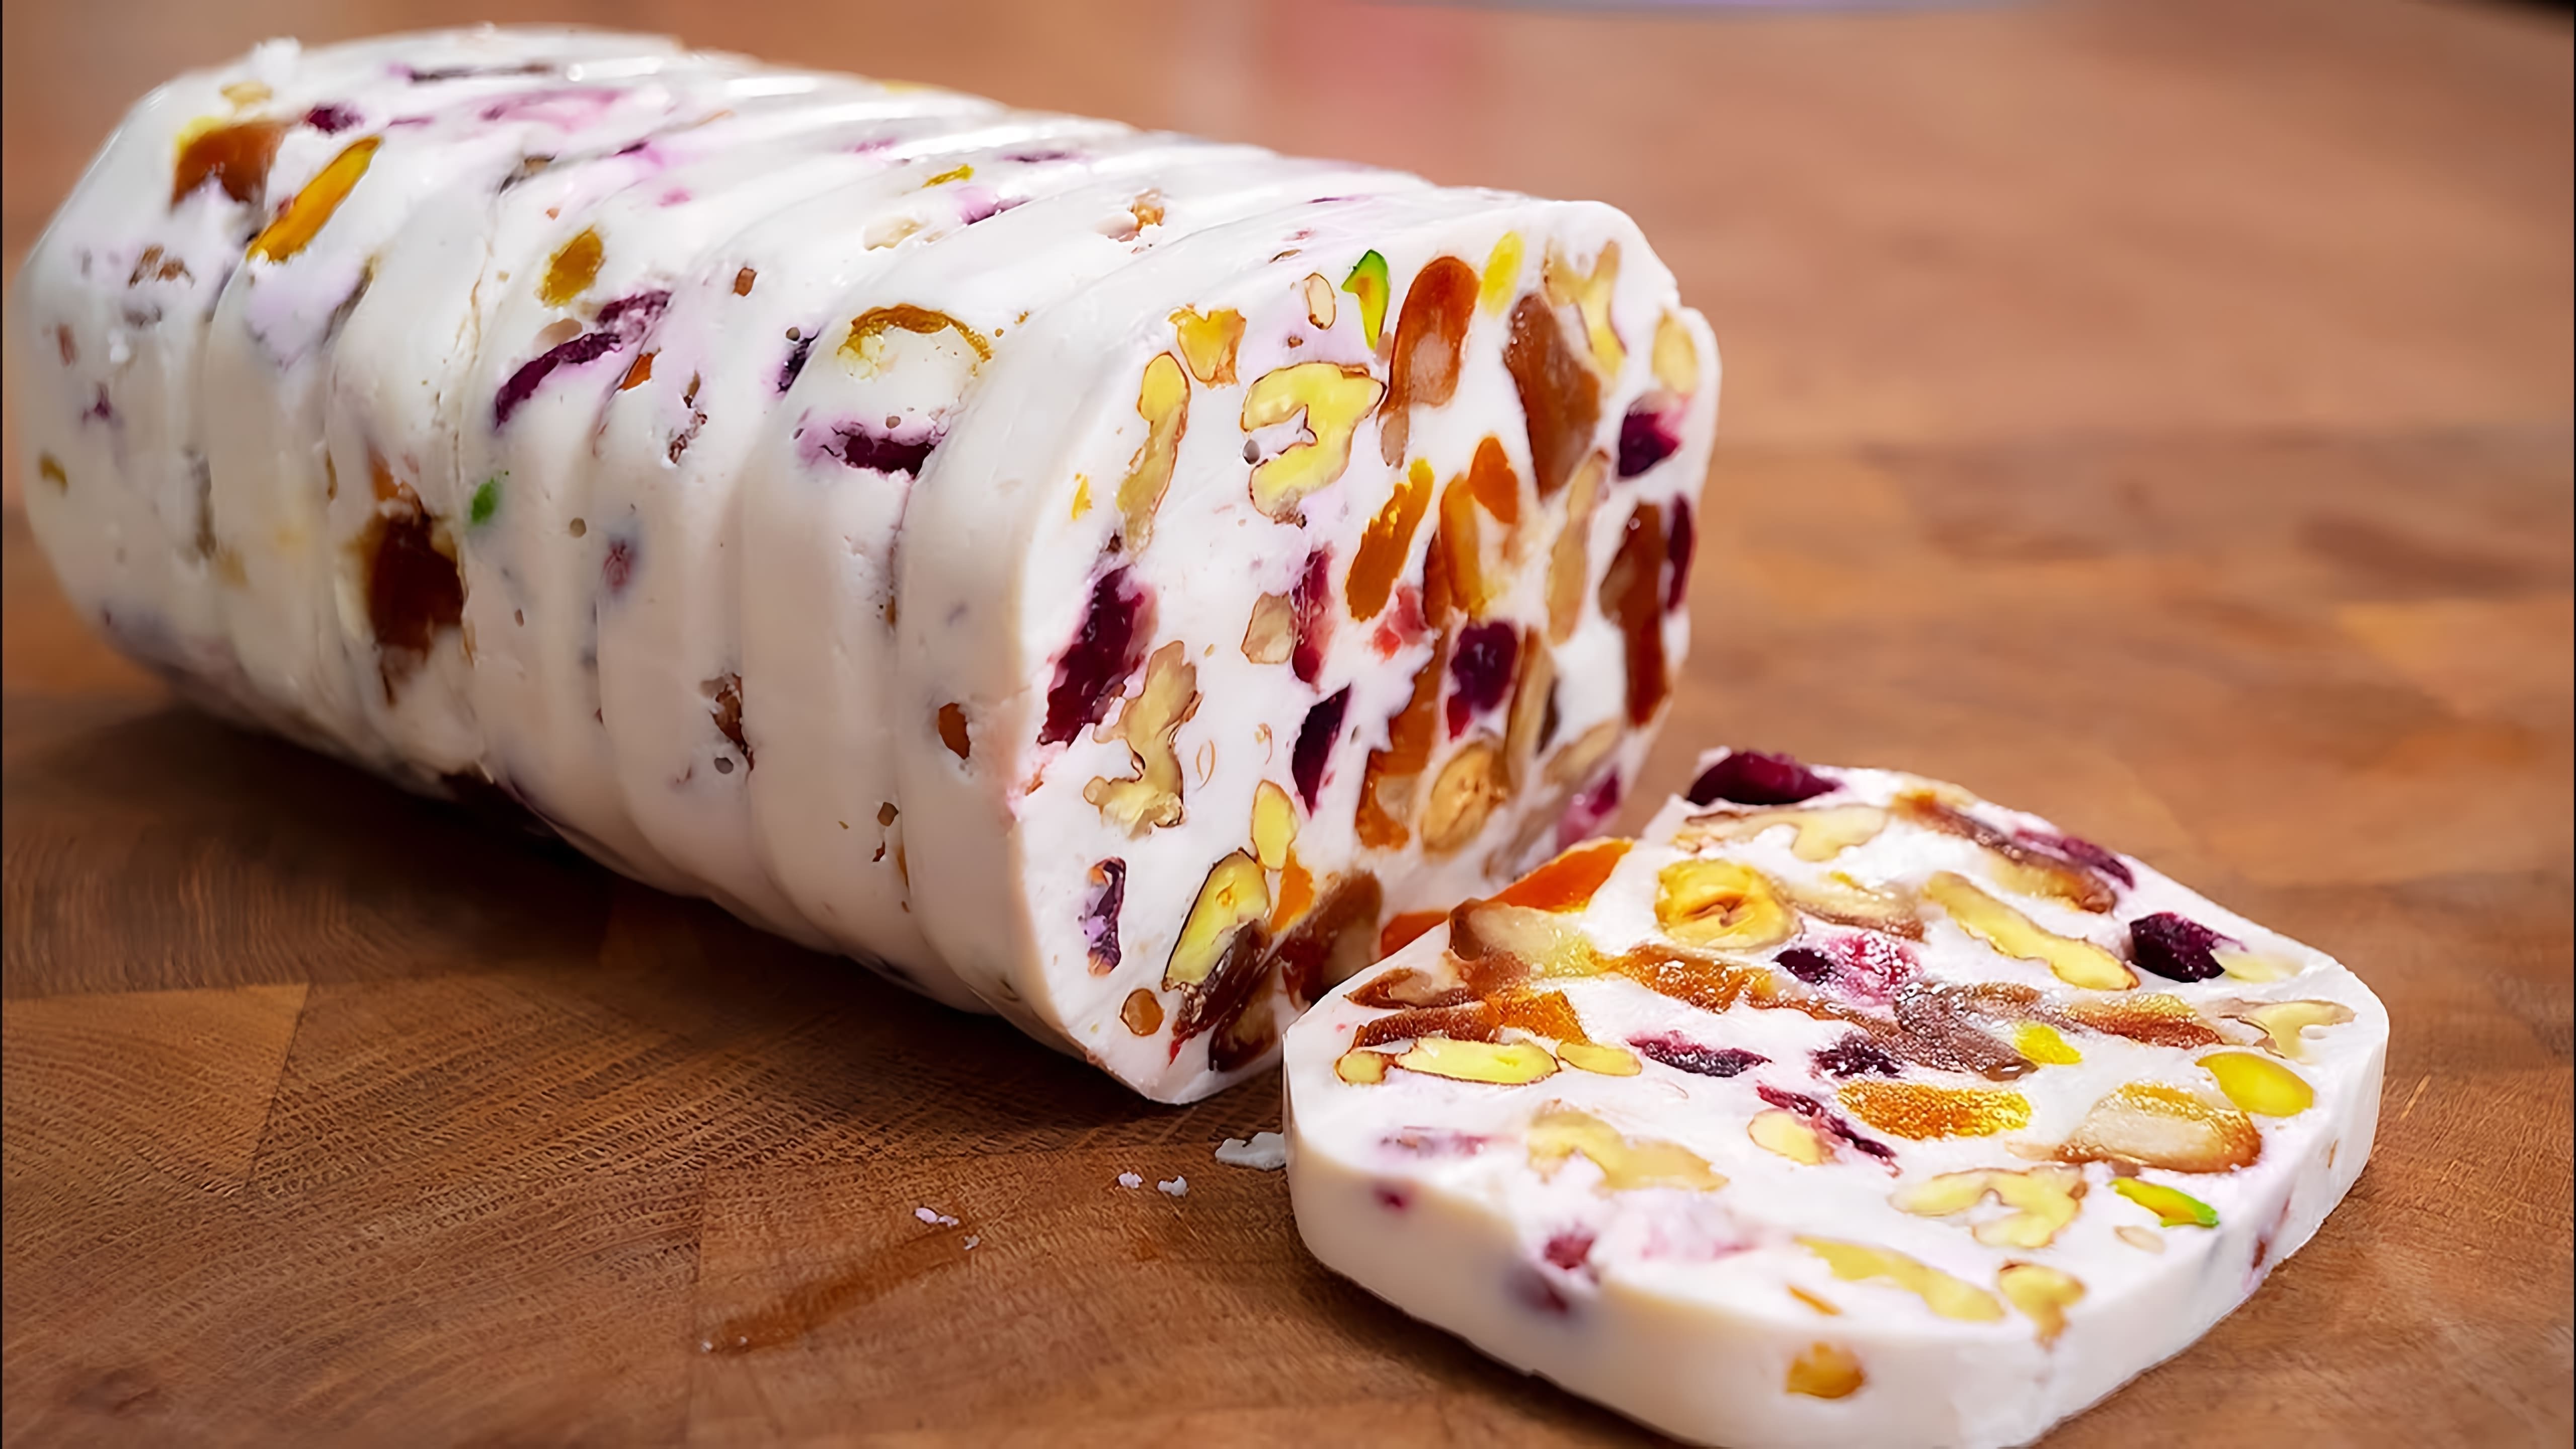 Видео демонстрирует рецепт здорового десерта из творожного сыра с сухофруктами и орехами